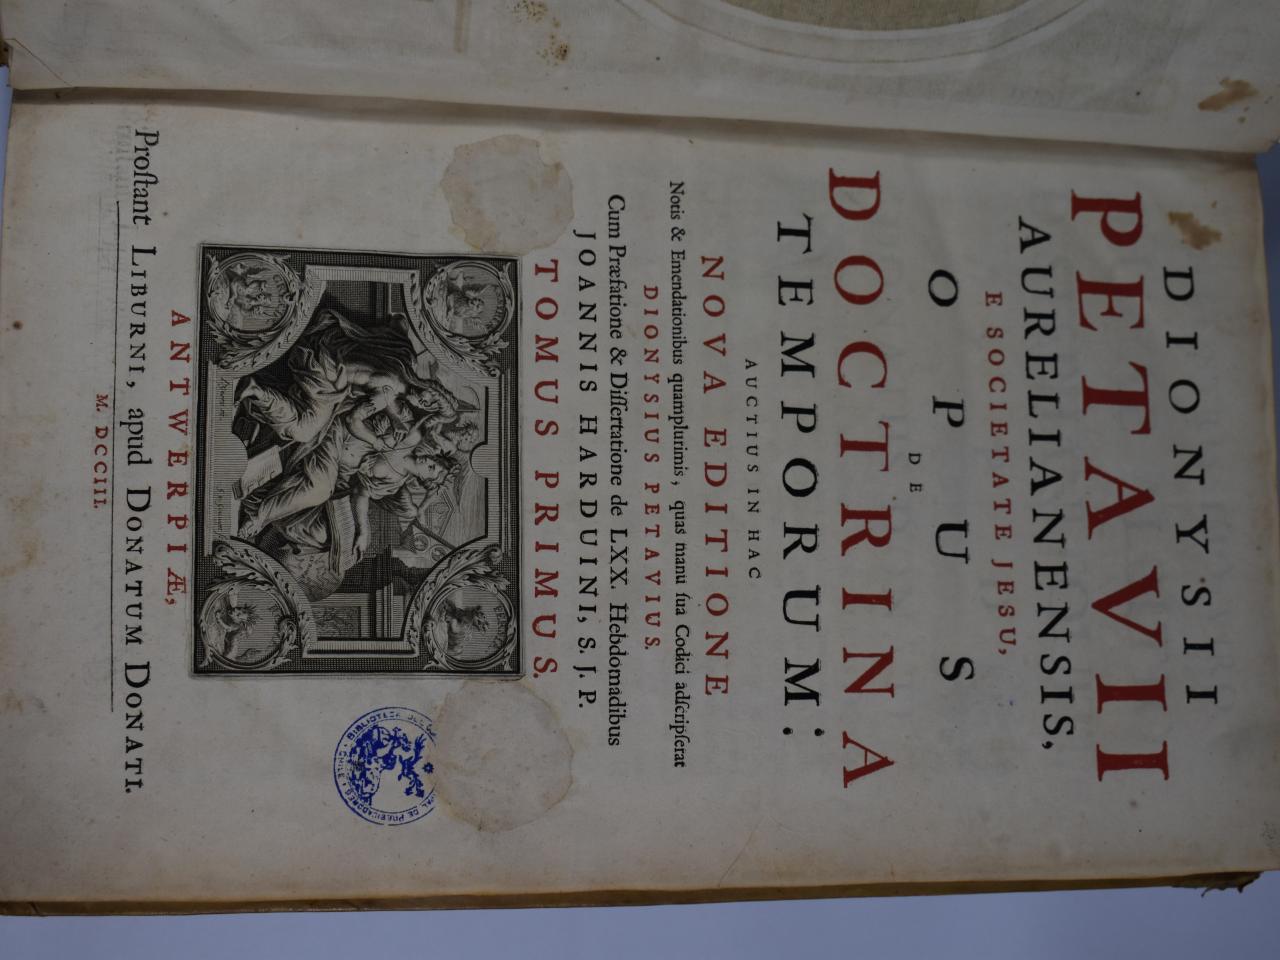 Dionysii Petavii aurealianensis e Societate Jesu […] (1703)